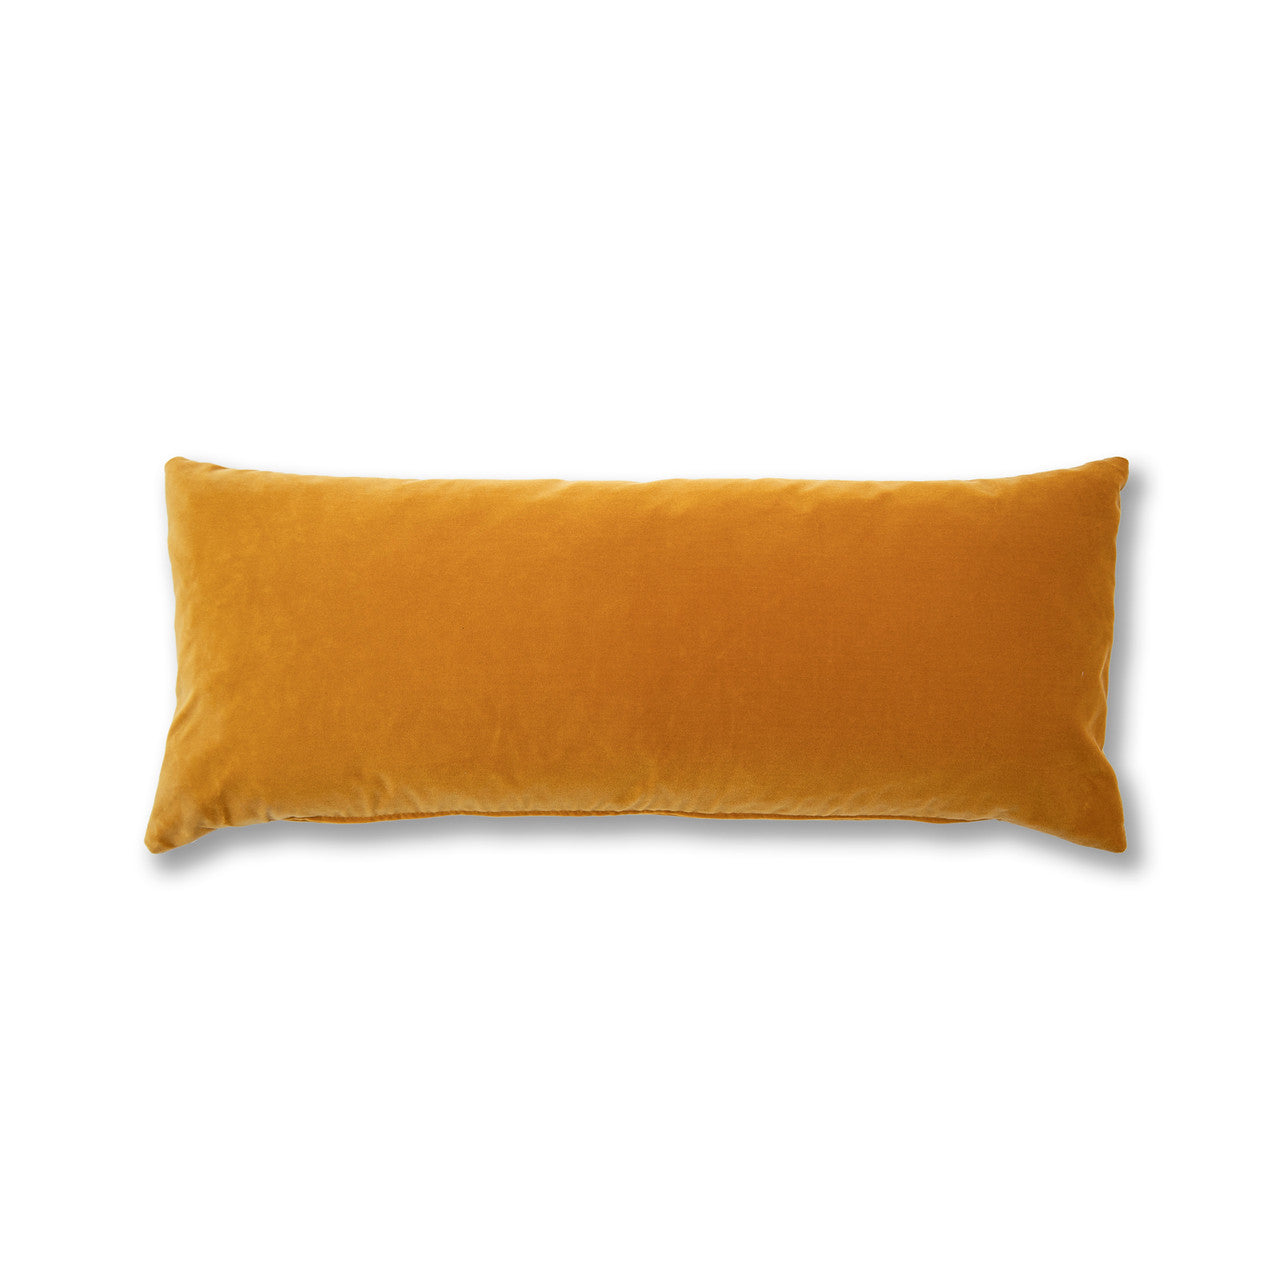 Mustard velvet kidney pillow